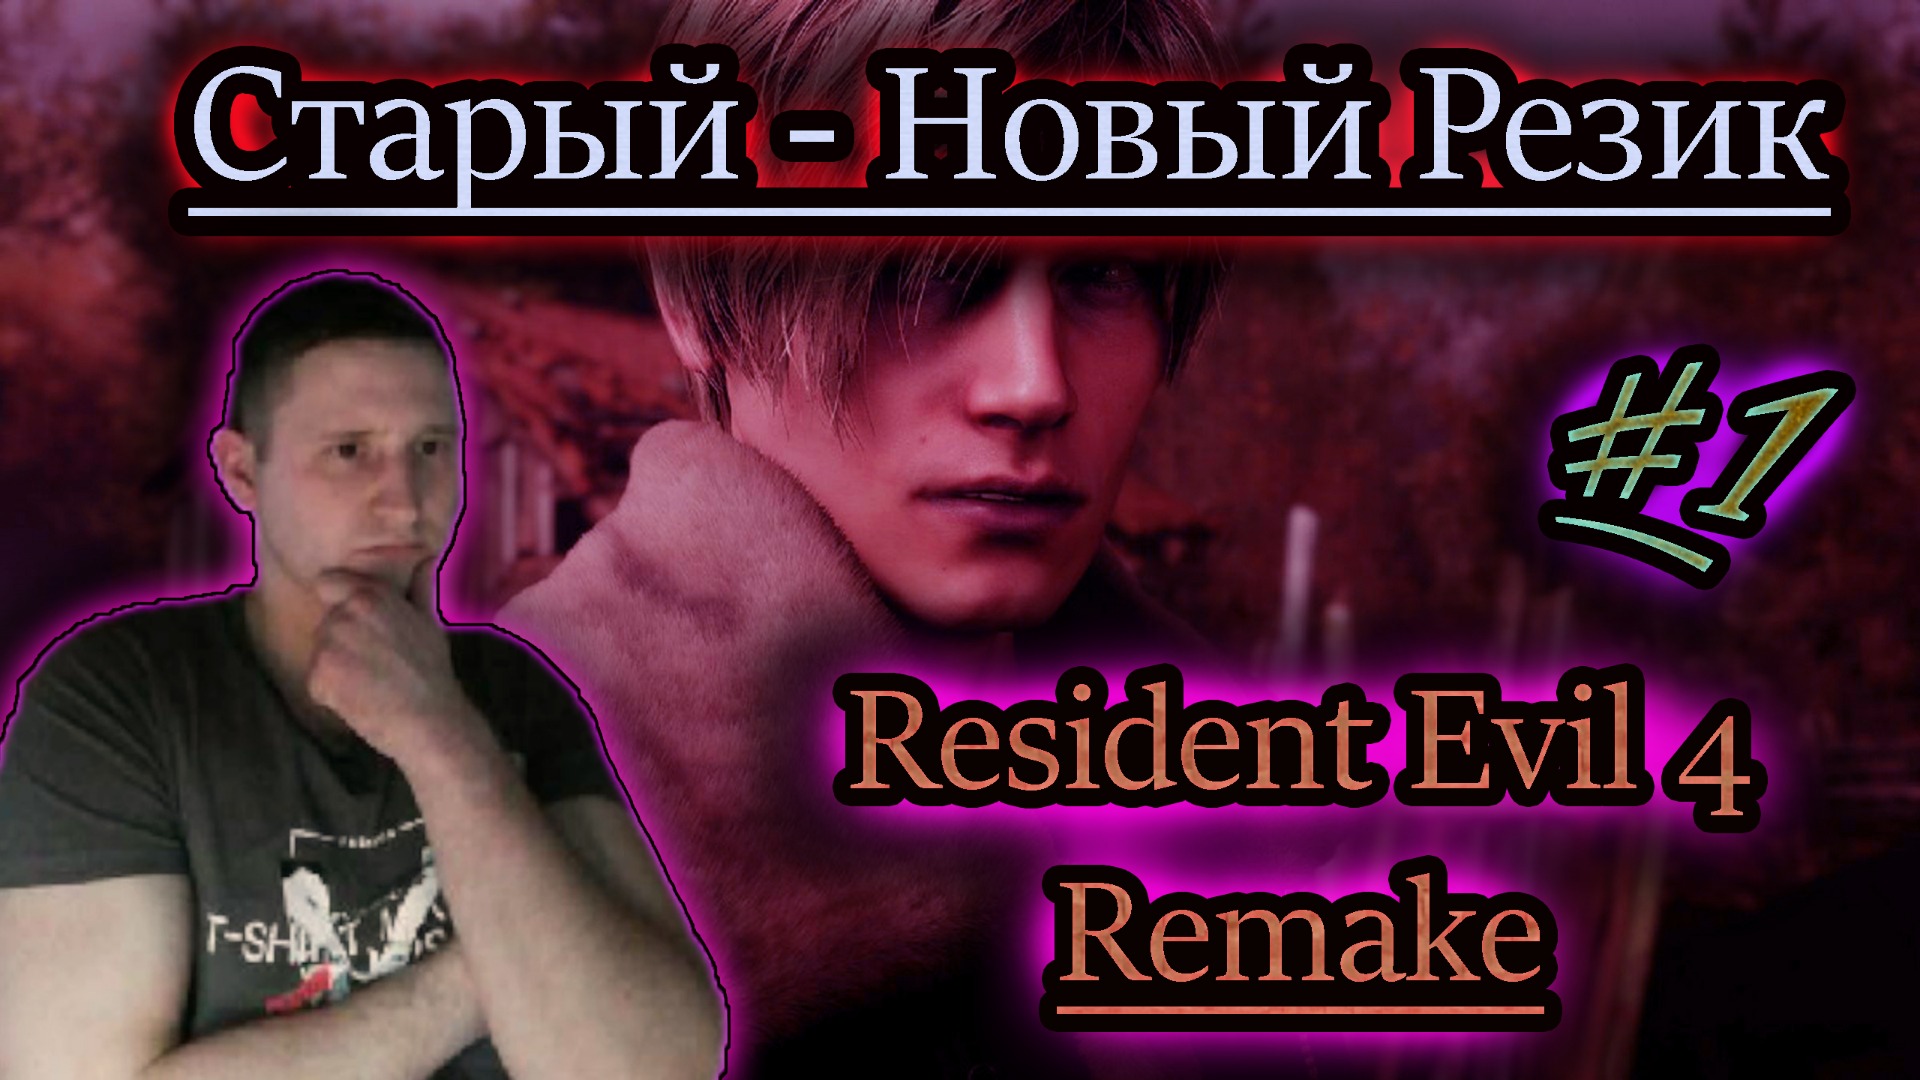 СТАРЫЙ НОВЫЙ РЕЗИДЕНТ ✔ Resident Evil 4 Remake